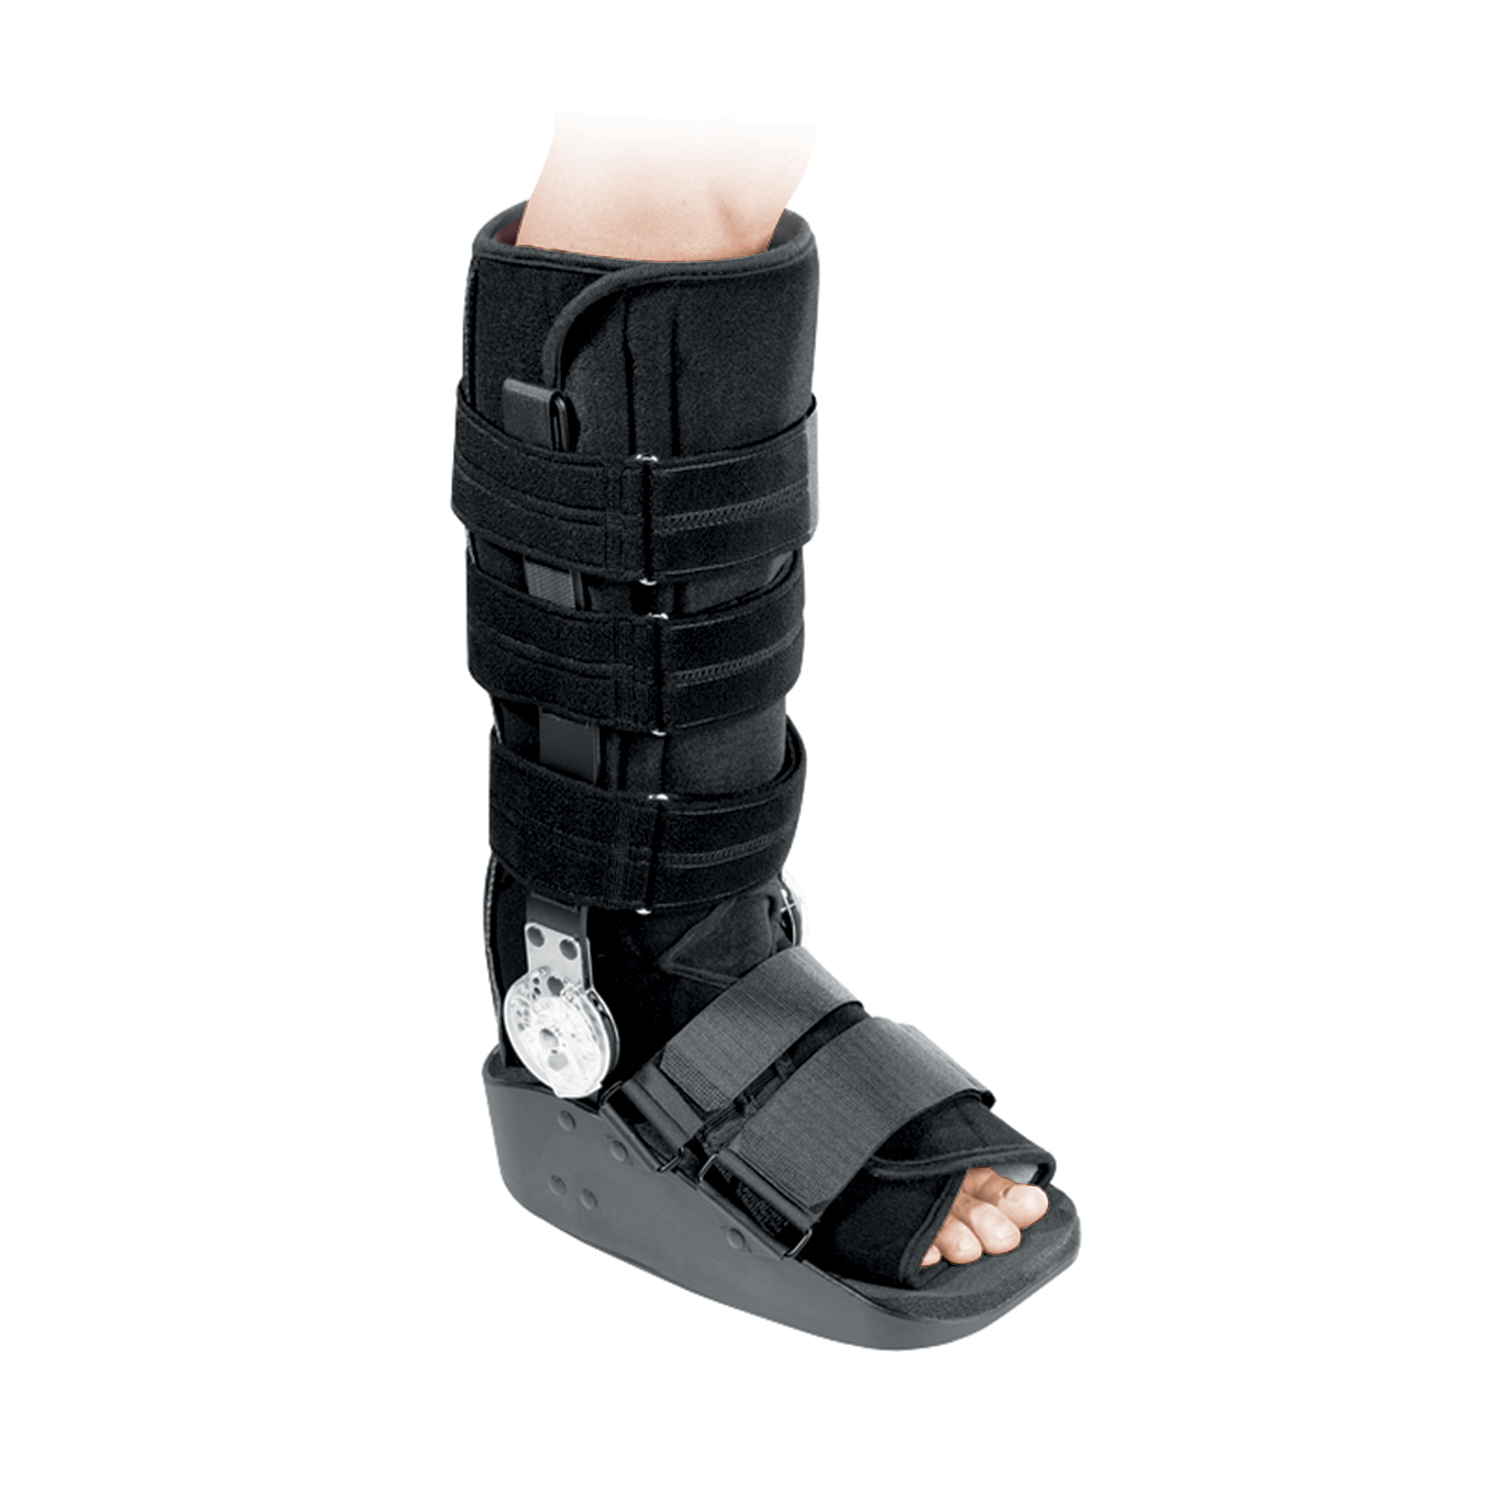 Produktbild PROCARE® Maxtrax™ ROM Walker, Unterschenkel-Fuß-Orthese zur Mobilisierung in einstellbaren Bewegungsumfängen